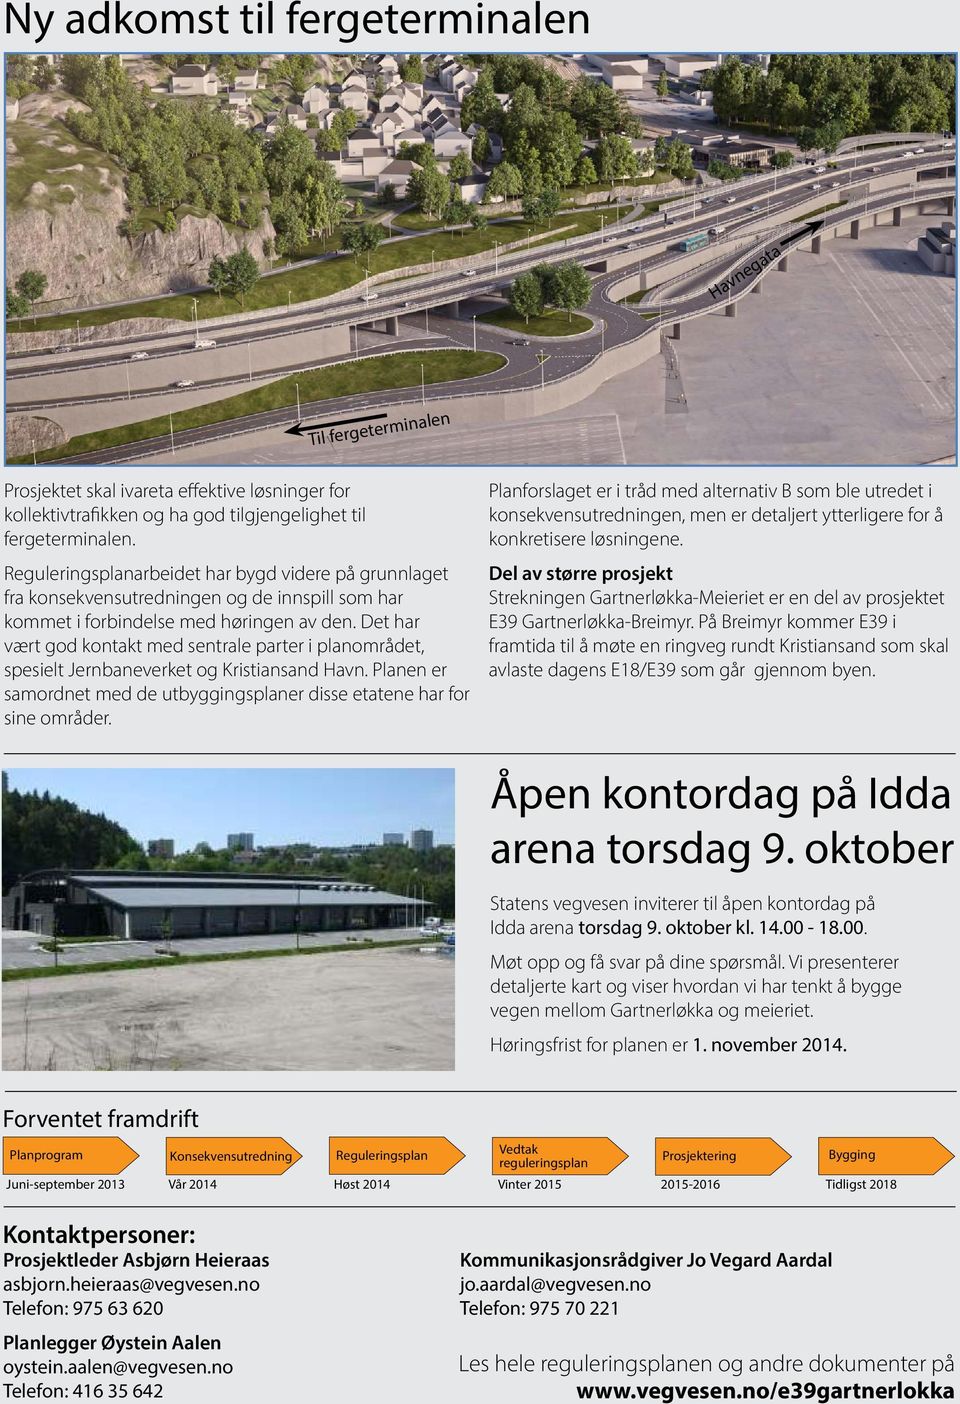 Det har vært god kontakt med sentrale parter i planområdet, spesielt Jernbaneverket og Kristiansand Havn. Planen er samordnet med de utbyggingsplaner disse etatene har for sine områder.